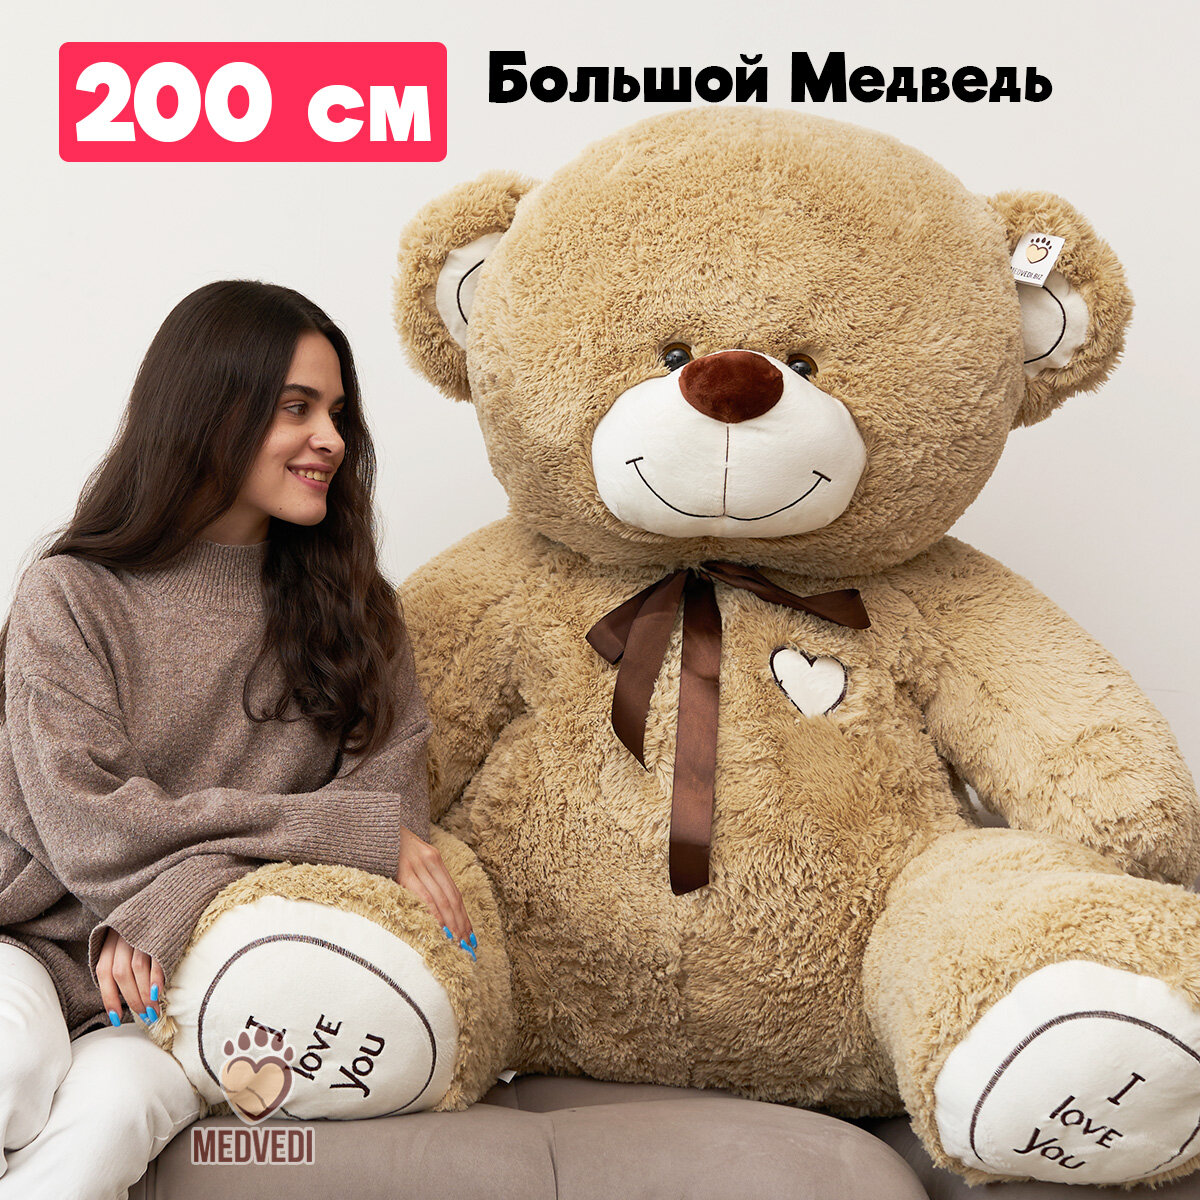 Мягкая игрушка большой плюшевый медведь I Love You Тима 200 см (2 м) кофейный (длина в рост 150 см, сидя 110 см)